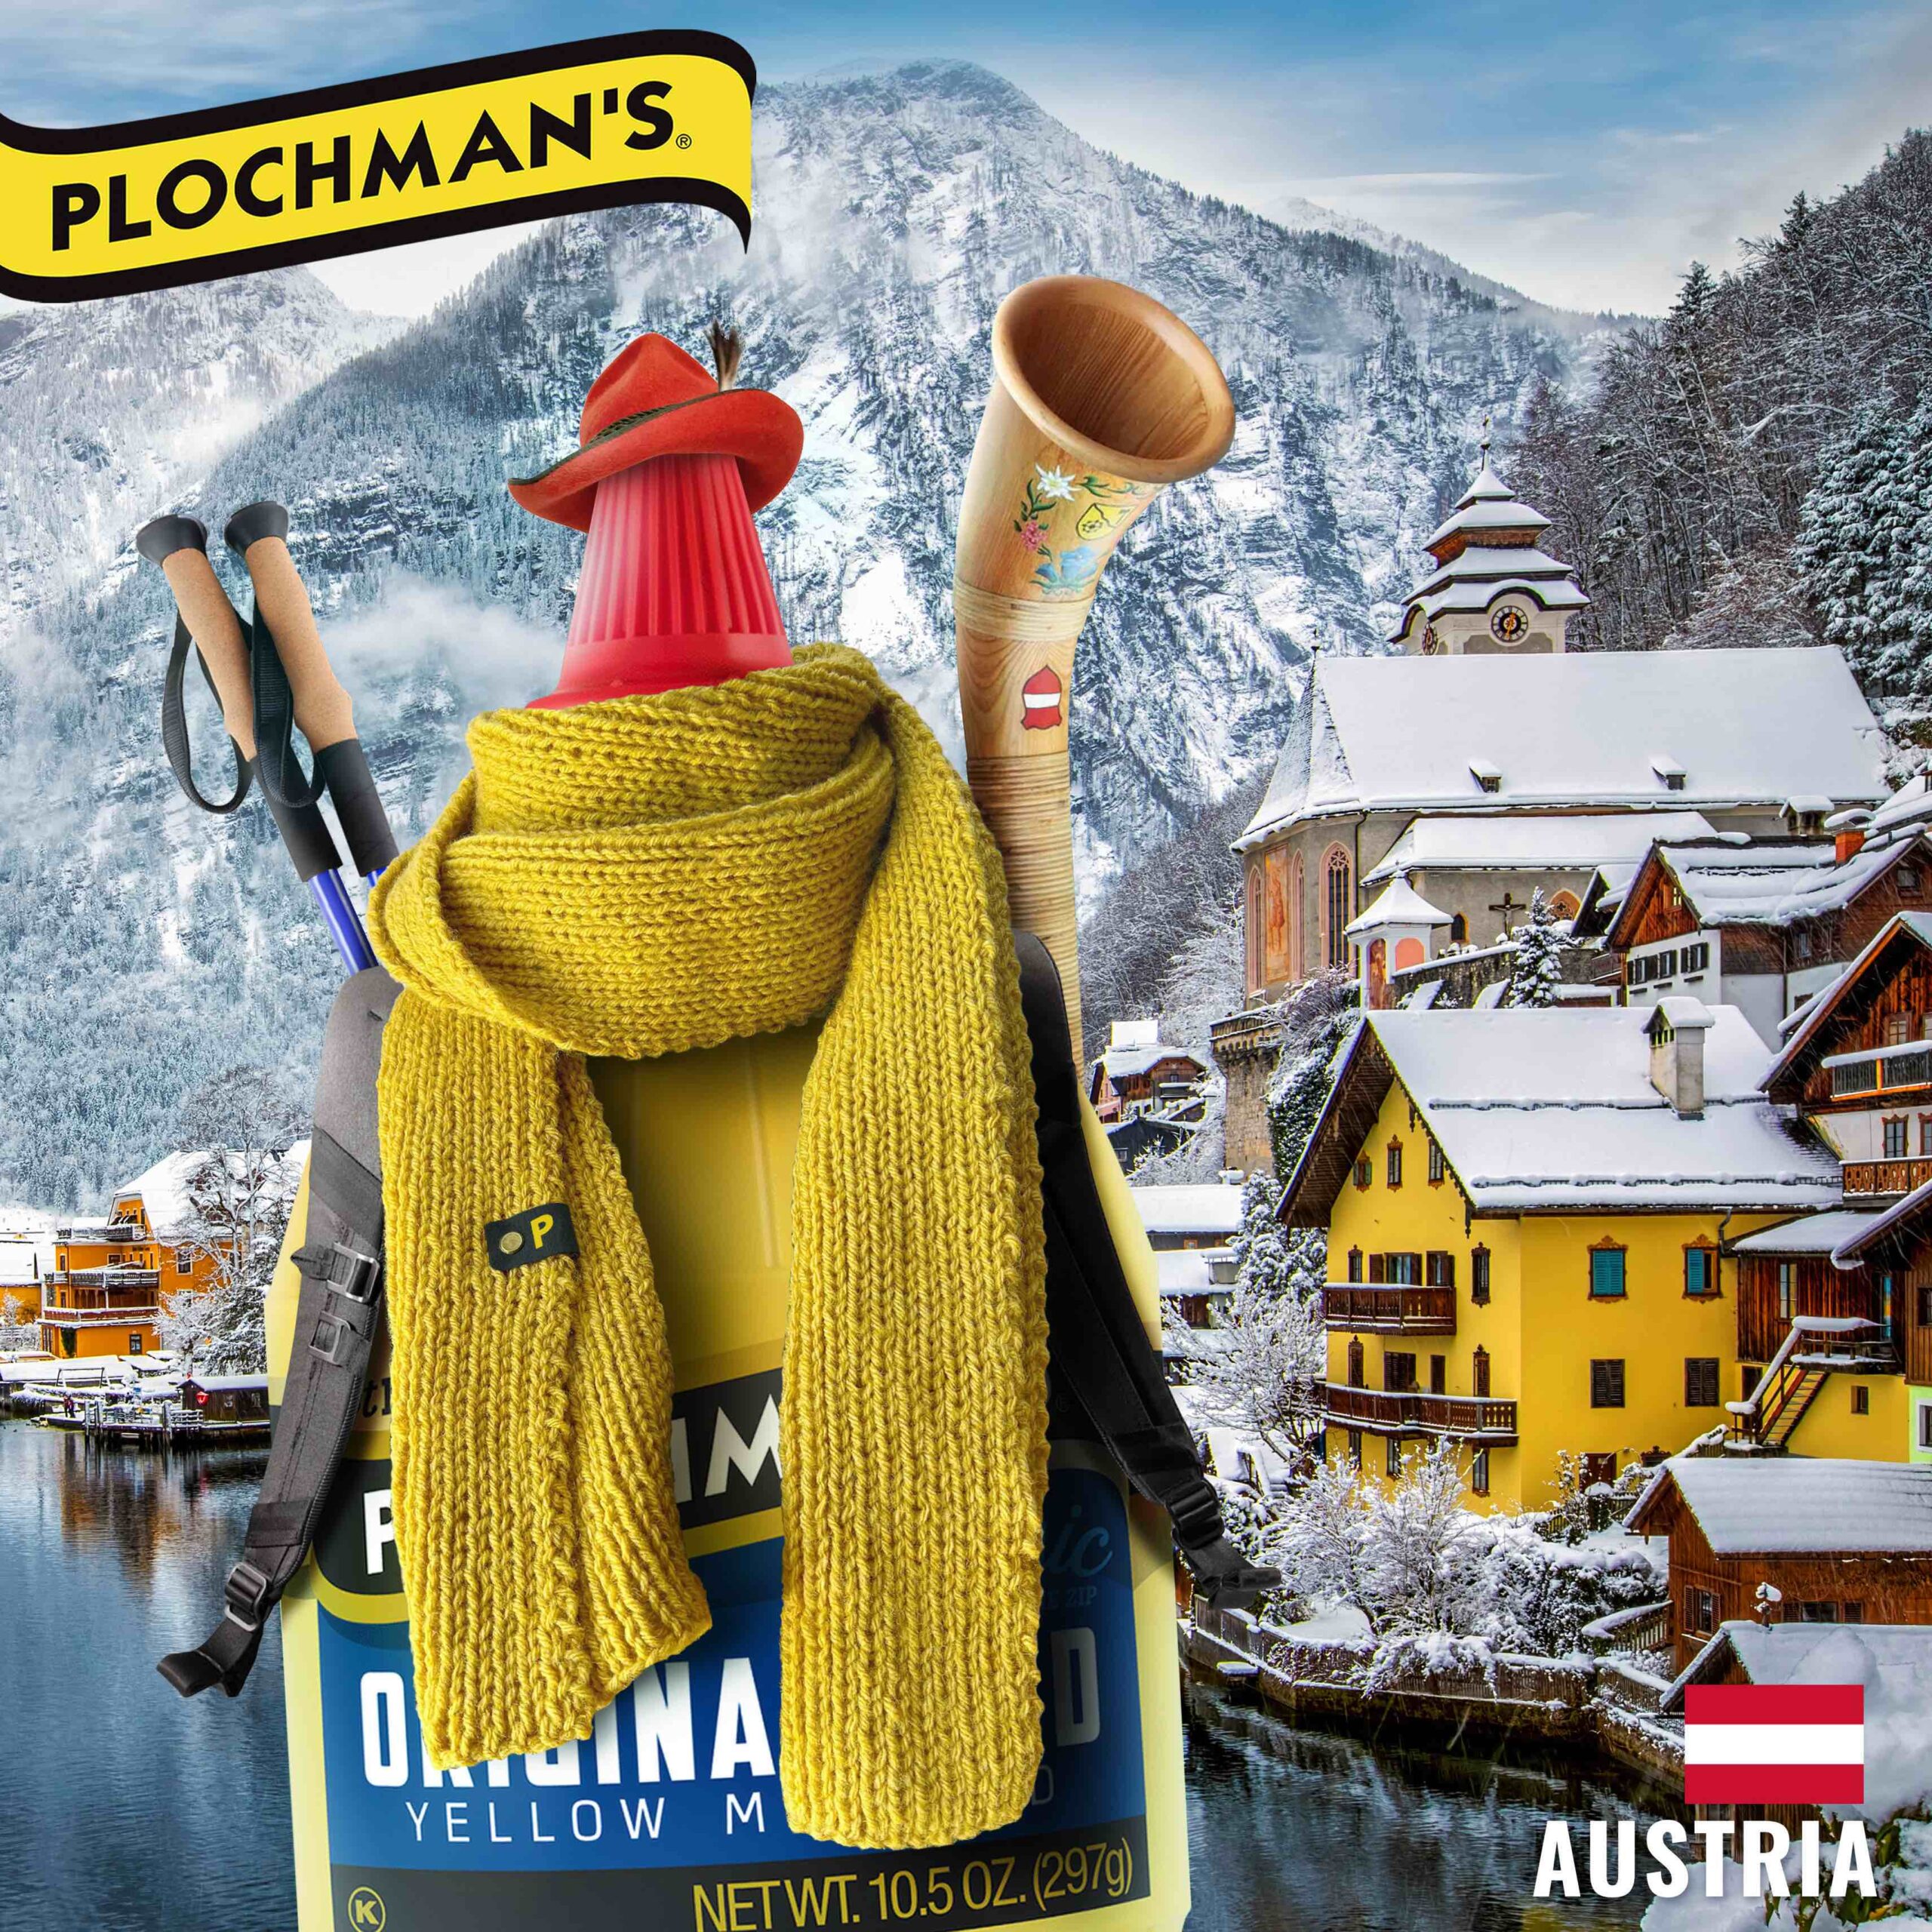 Bottle of Plochman's mustard in the swiss alps of Austria